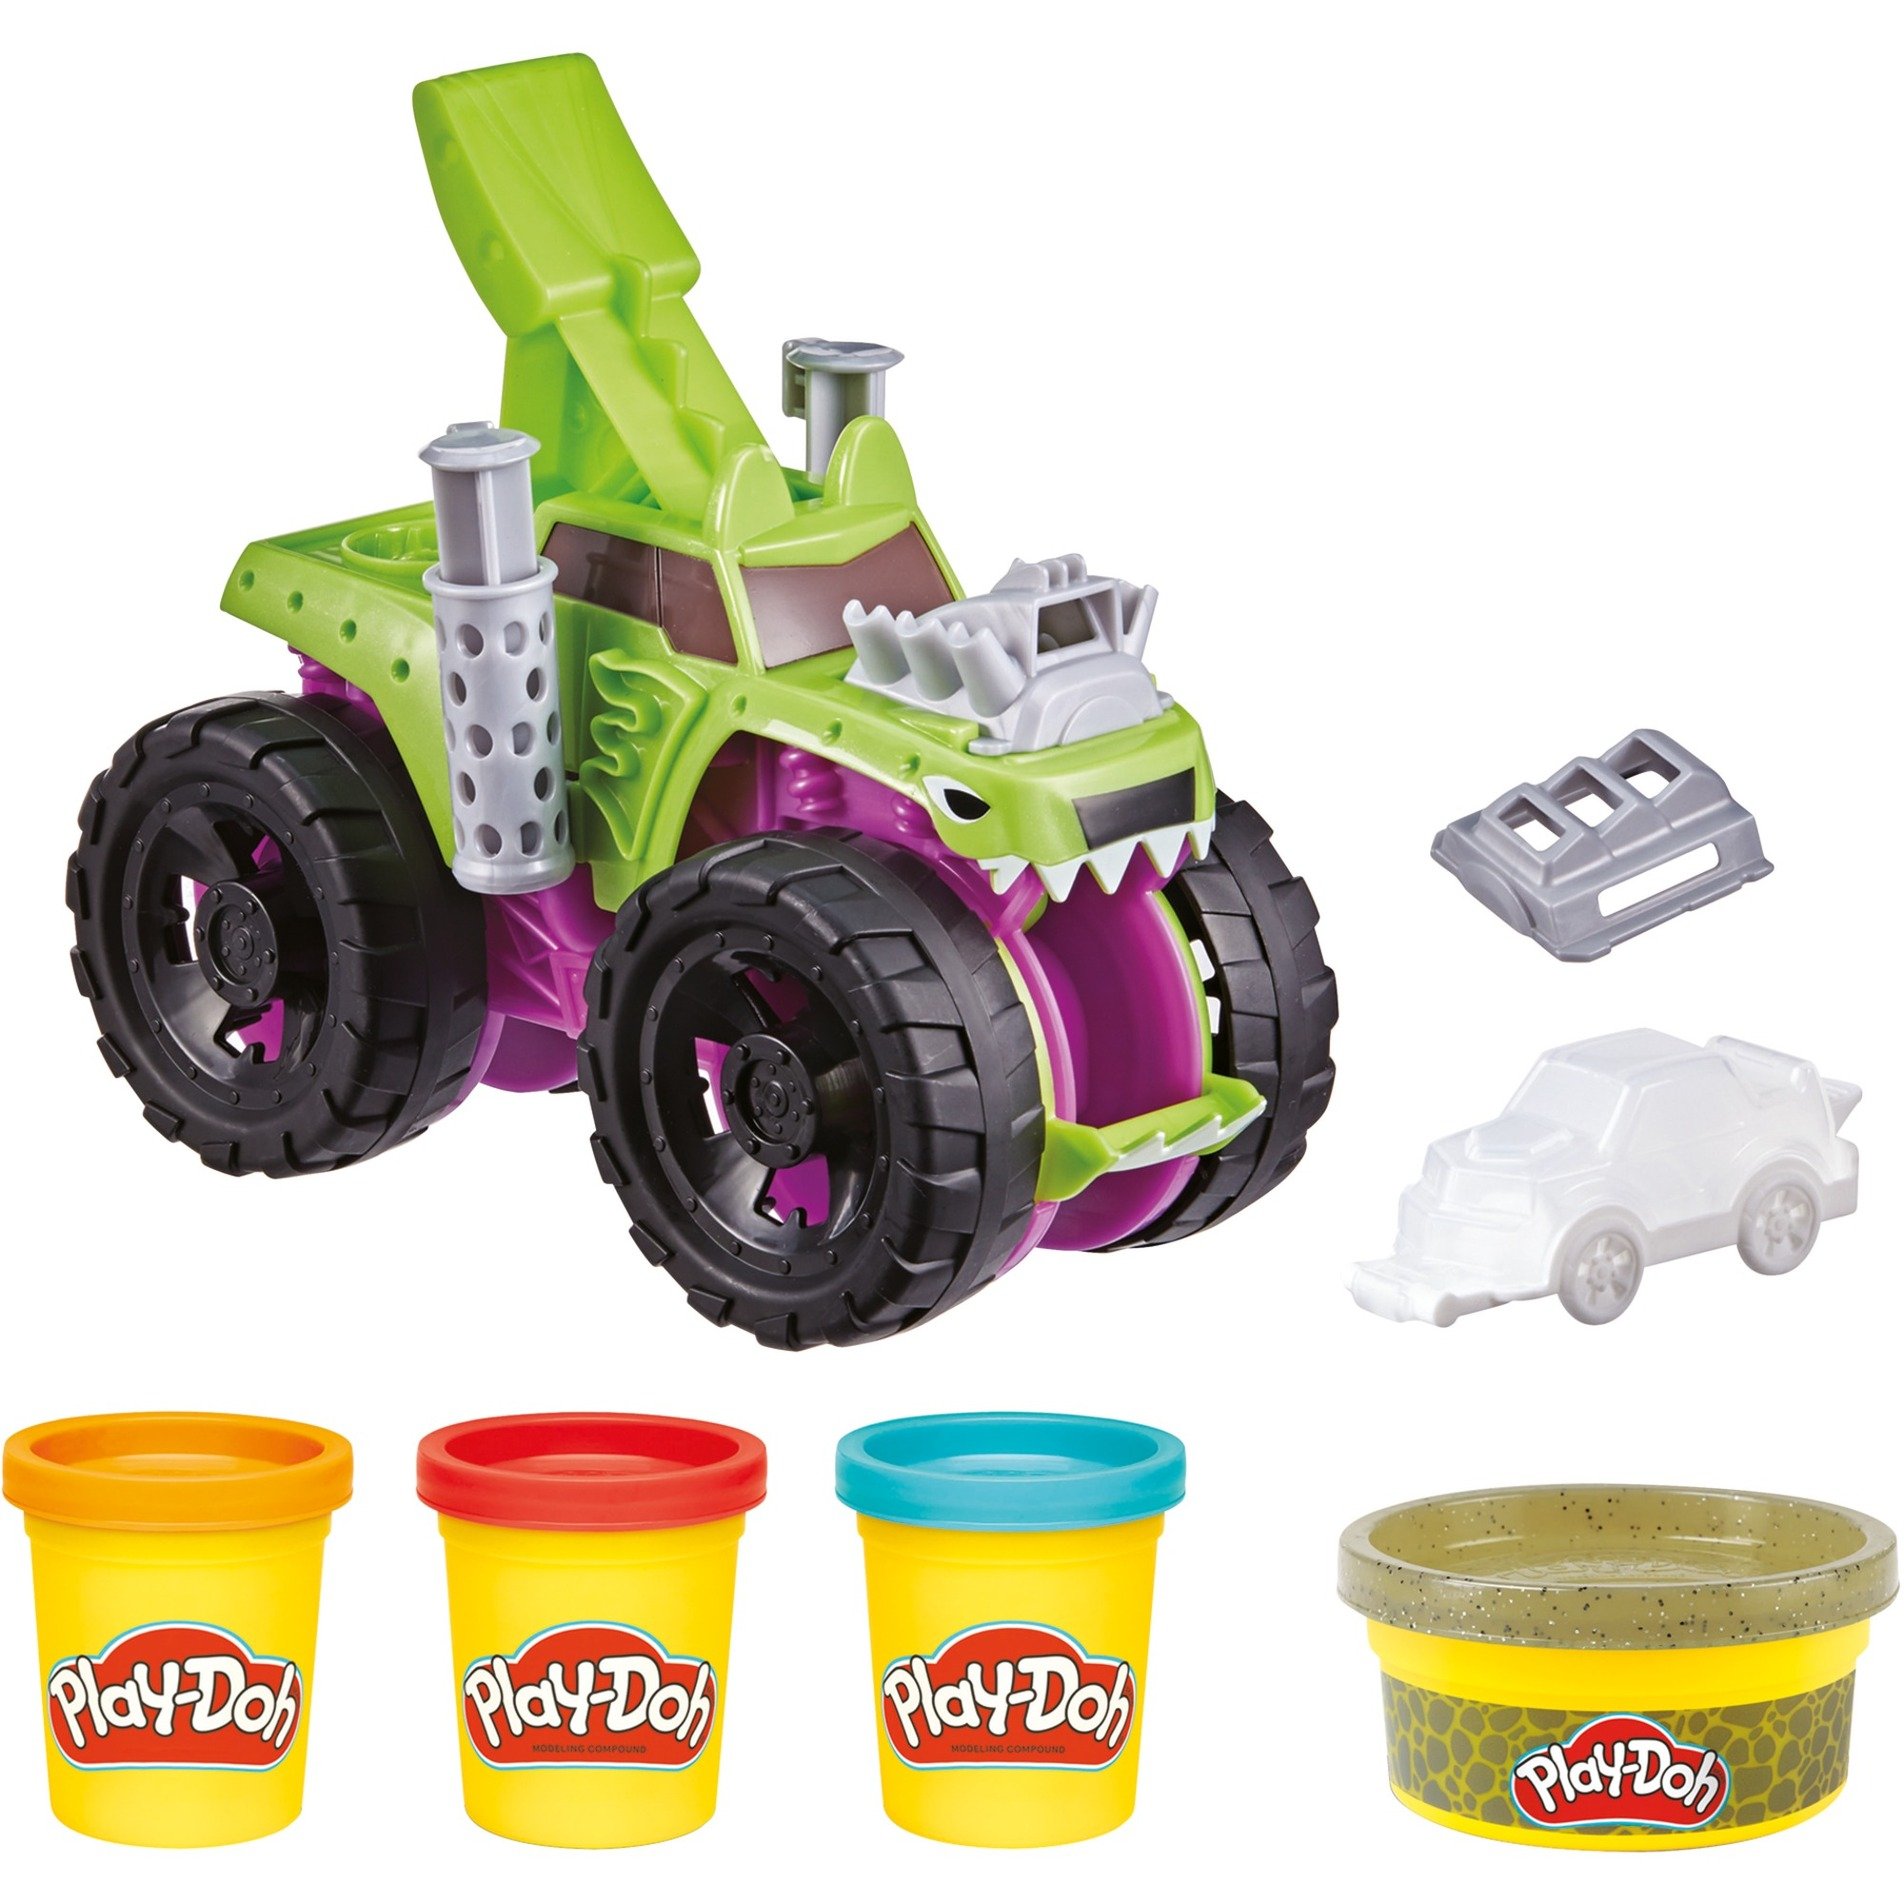 Image of Alternate - Play-Doh Mampfender Monster Truck, Kneten online einkaufen bei Alternate